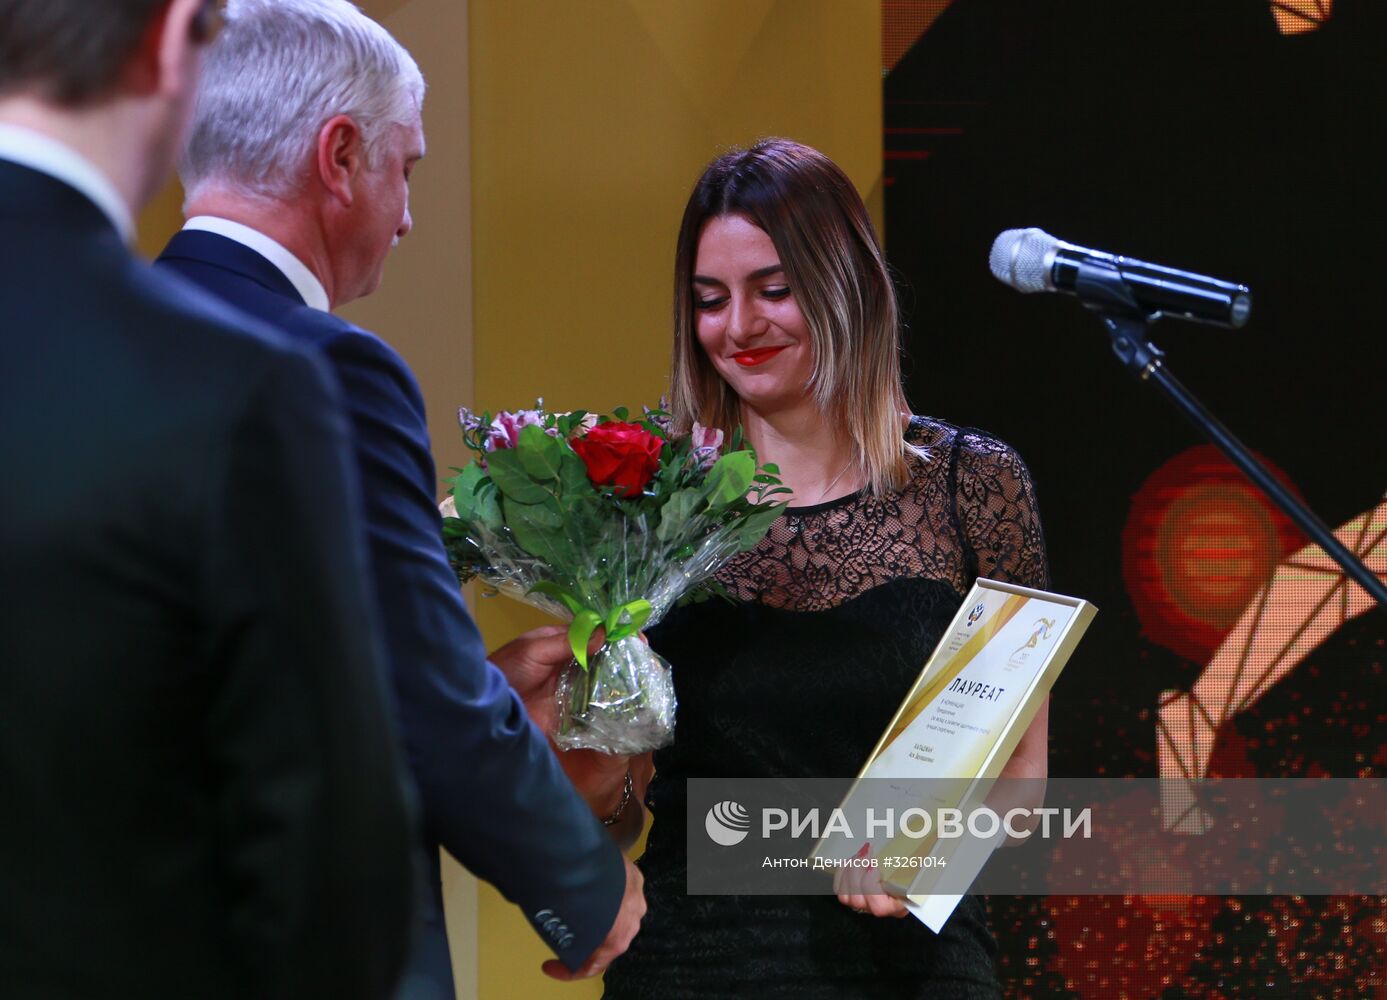 Награждение лауреатов национальных номинаций в области физической культуры и спорта 2017 года